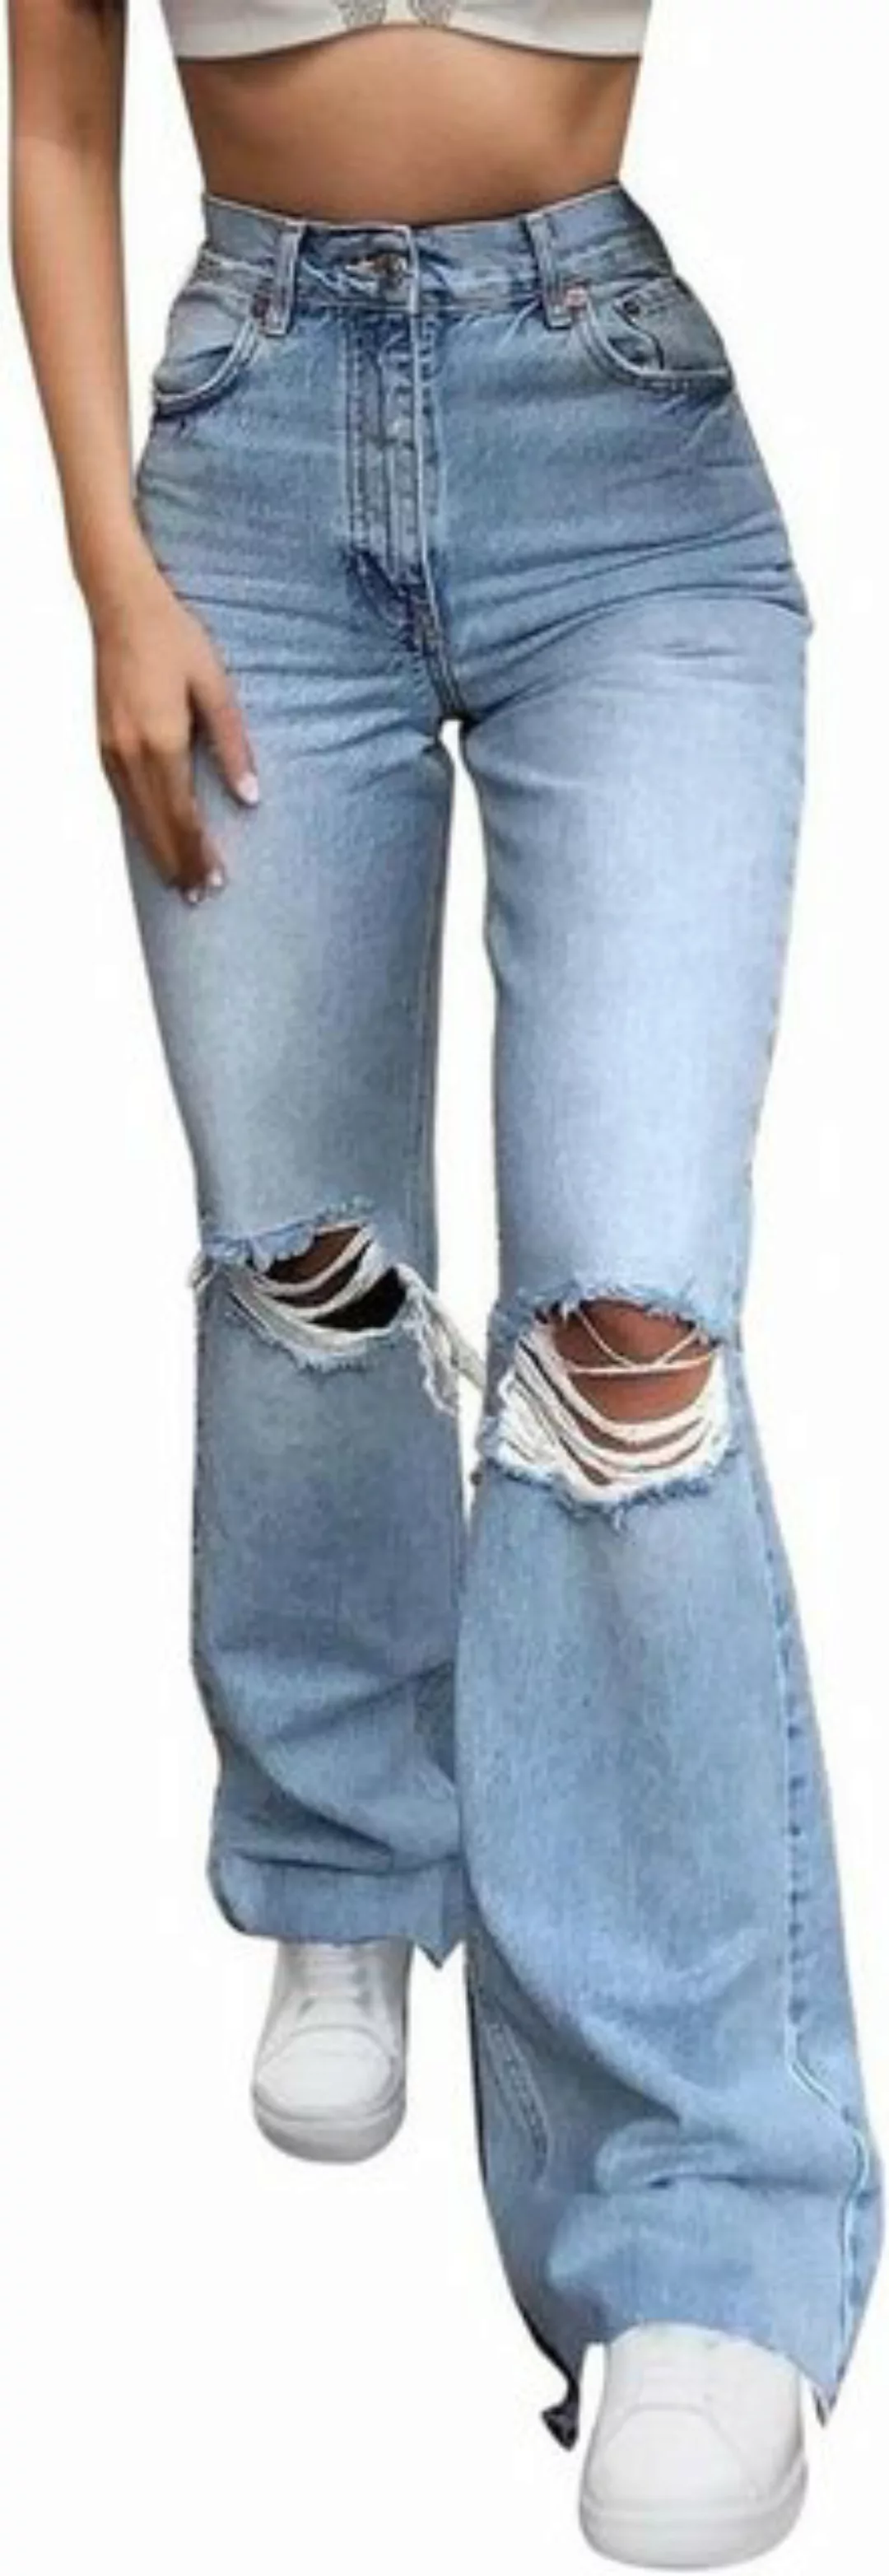 FIDDY Schlaghose Jeans Gerades Bein Damen Jeans Damen Regular Damen Frühlin günstig online kaufen